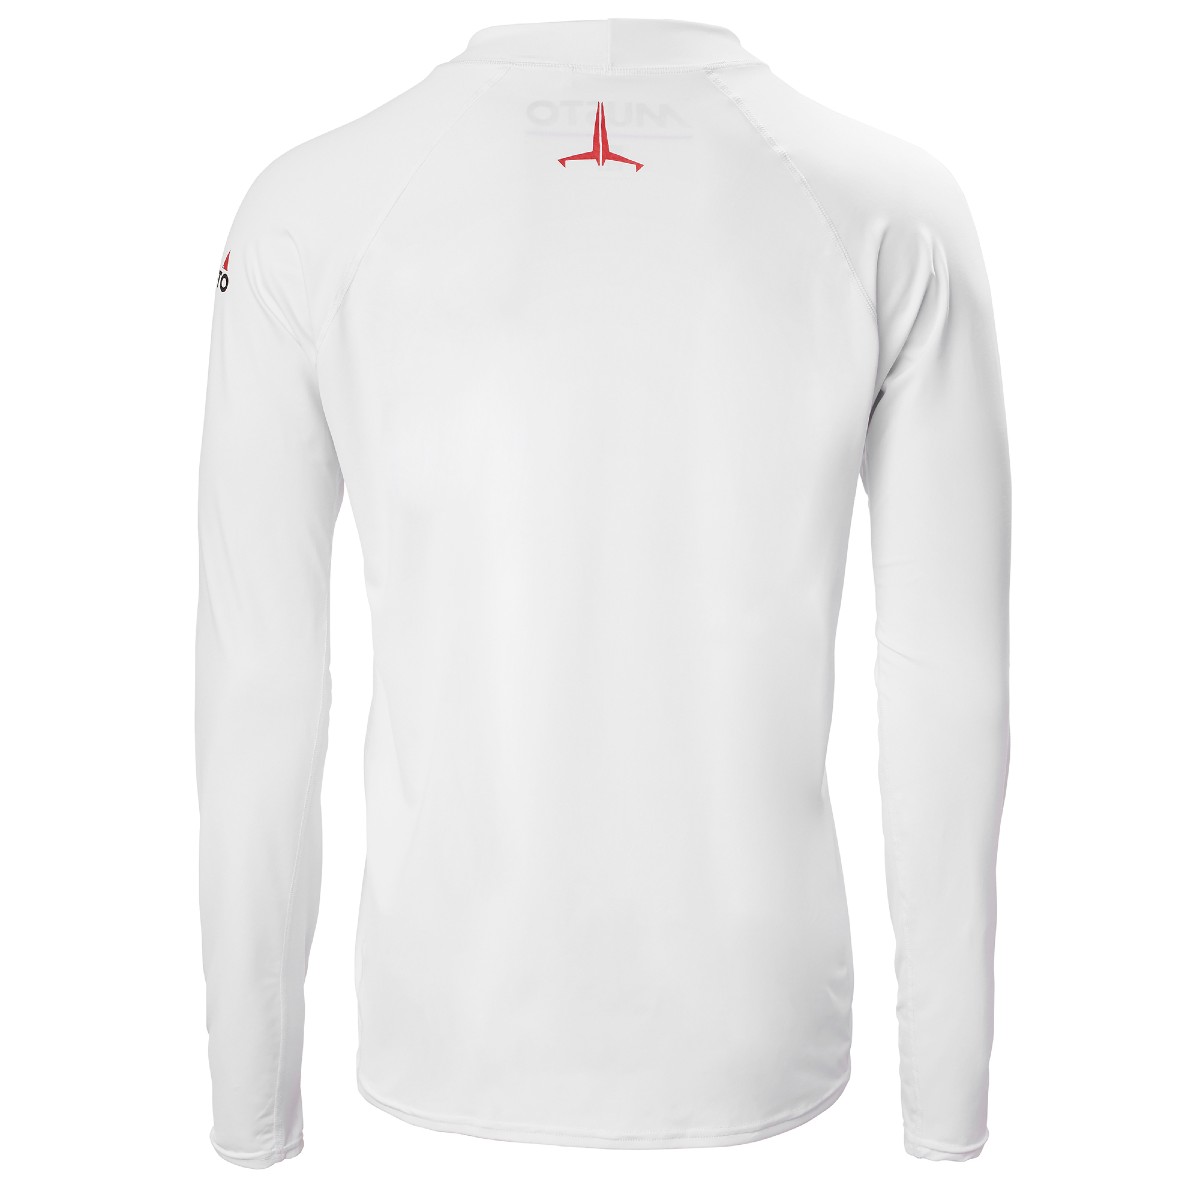 https://captainwatts.co.uk/media/image/64/e3/34/Musto-Insignia-UV-FD-Long-Sleeve-T-Shirt-White-Back.jpg